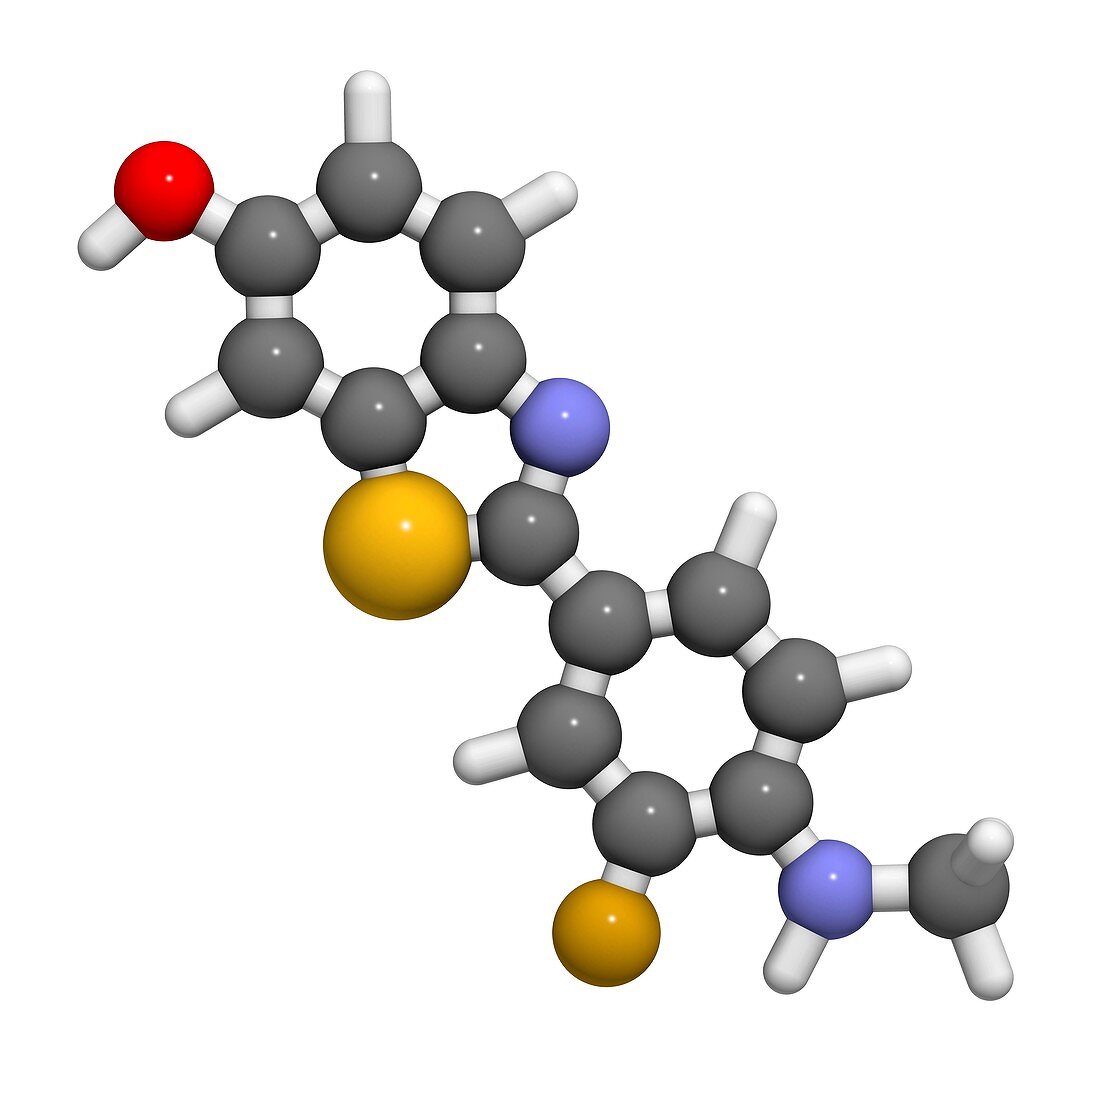 Flutemetamol 18F PET tracer molecule